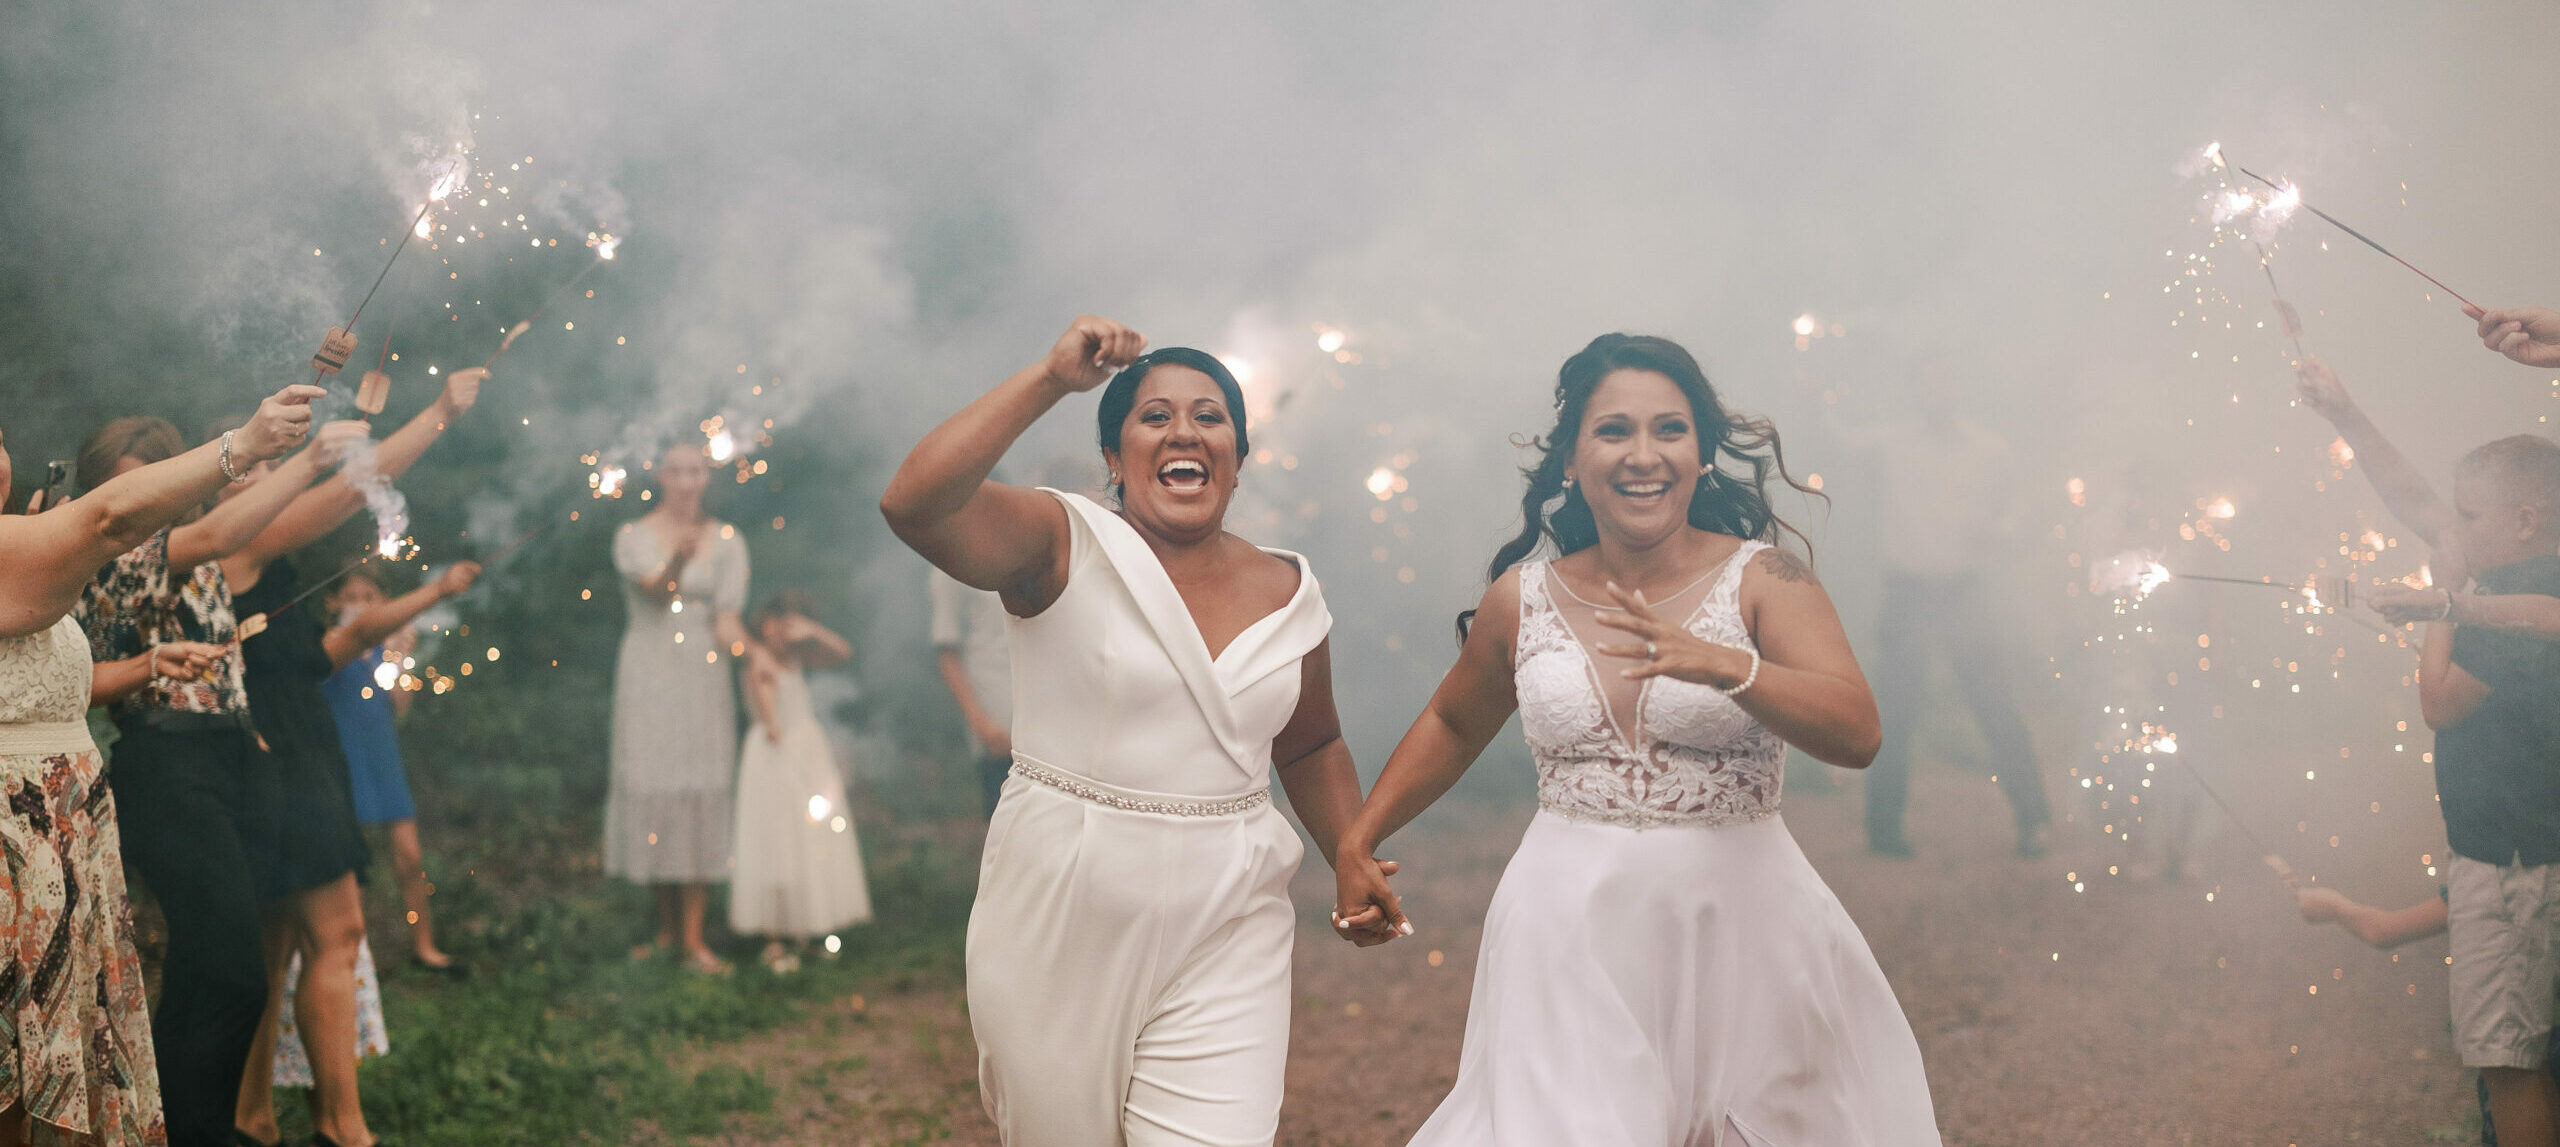 two brides run through sparklers on their wedding day